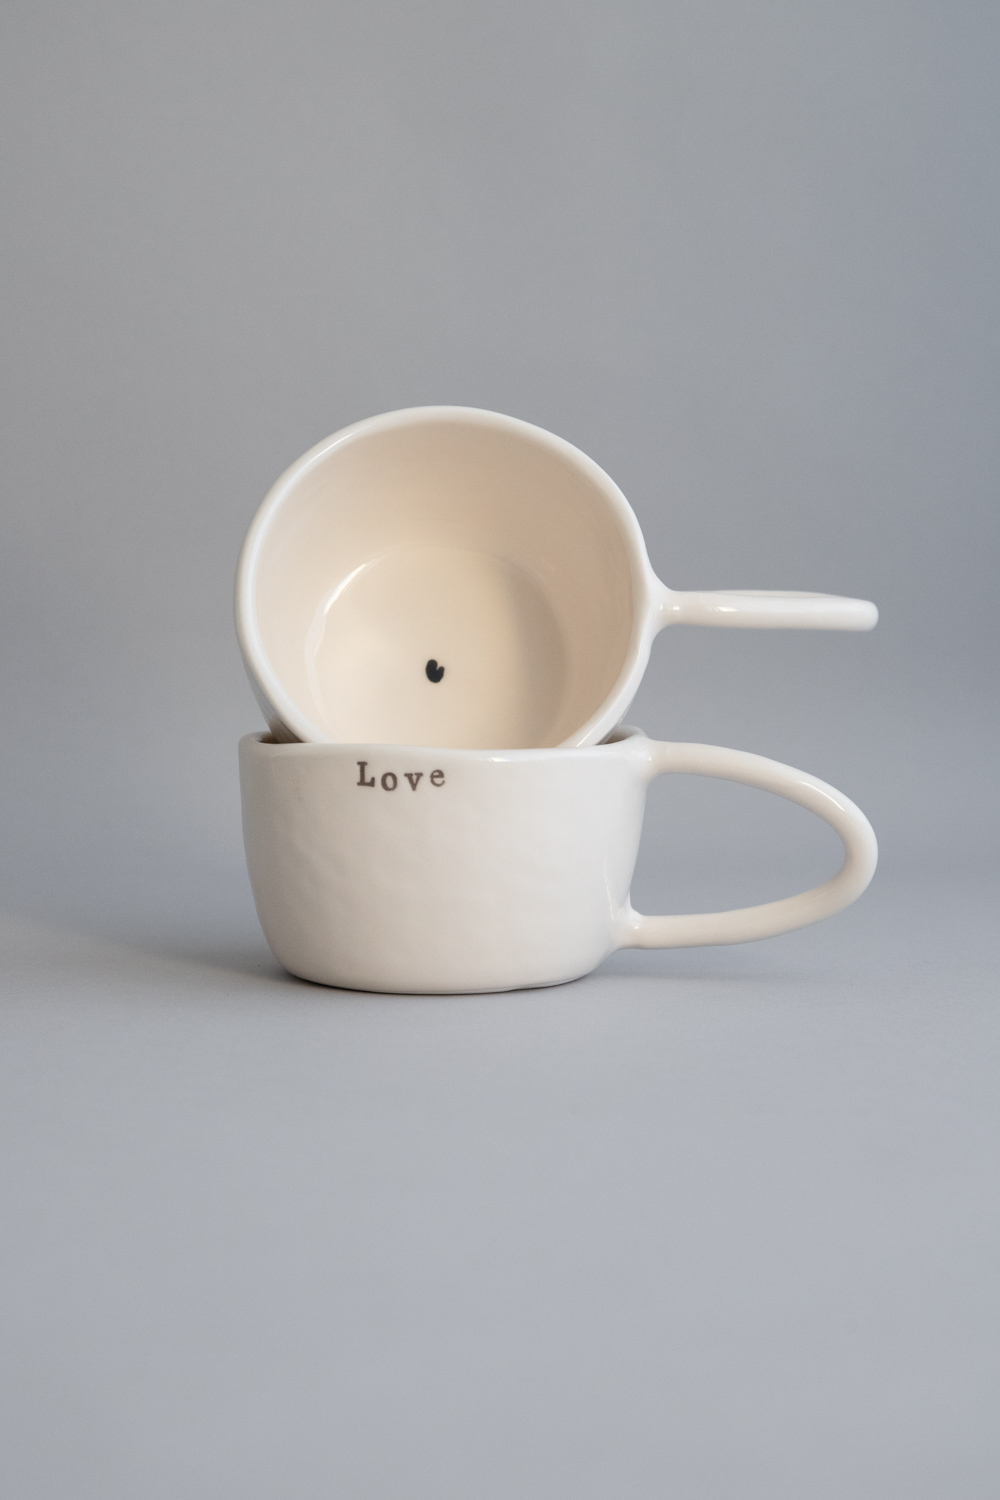 Terra Handmade Ceramic Mug - Little Heart